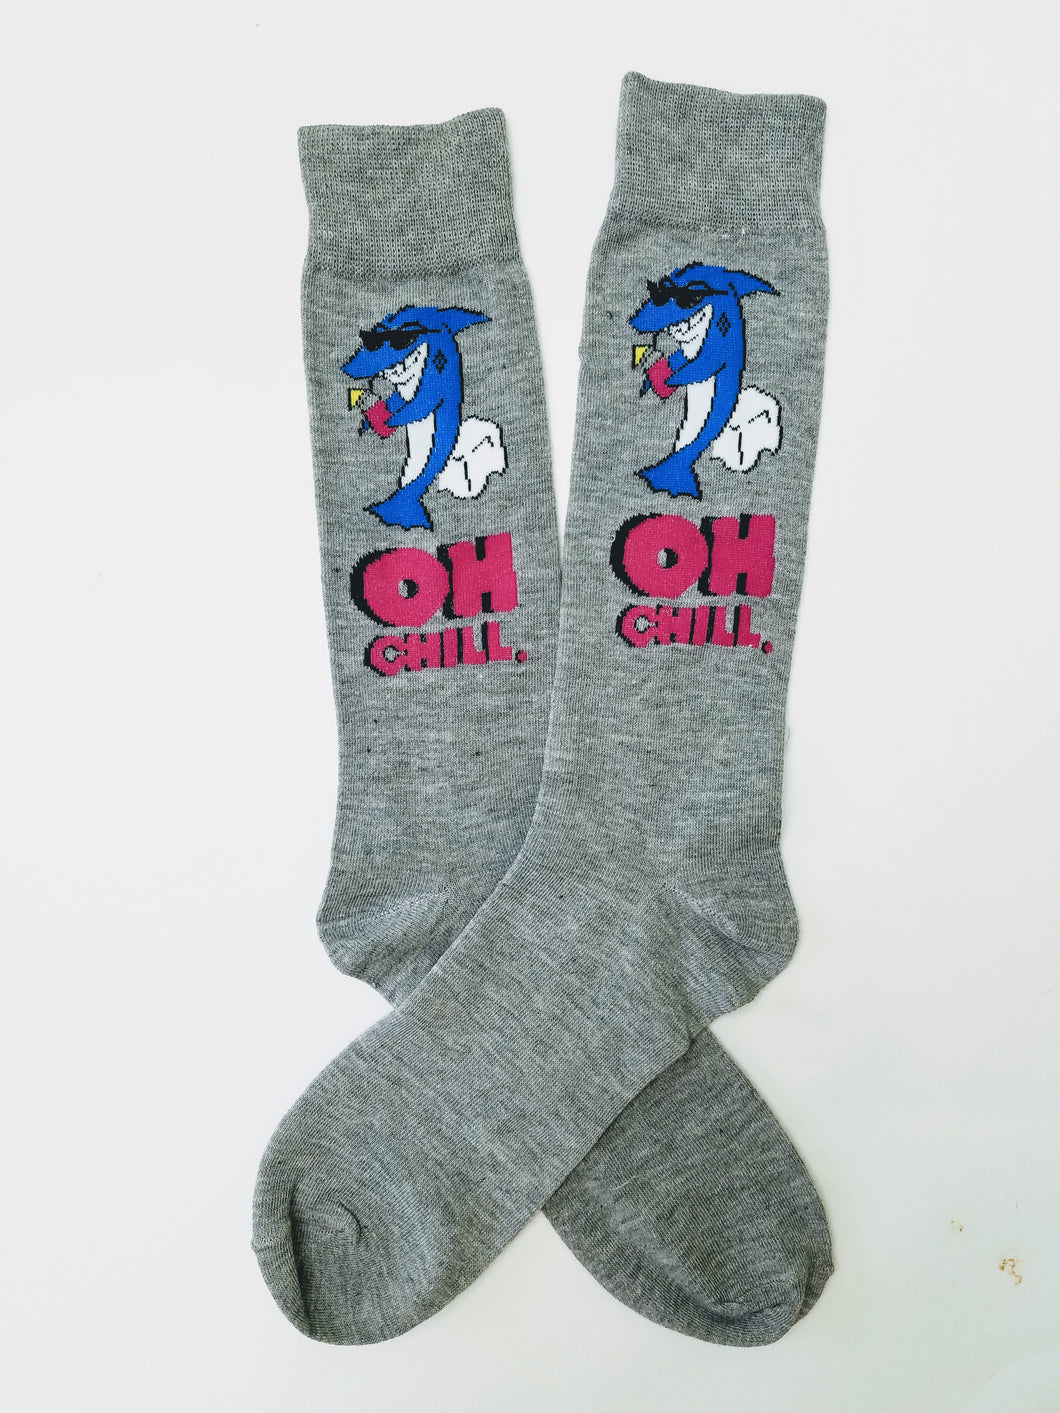 Shark Oh Chill Crew Socks